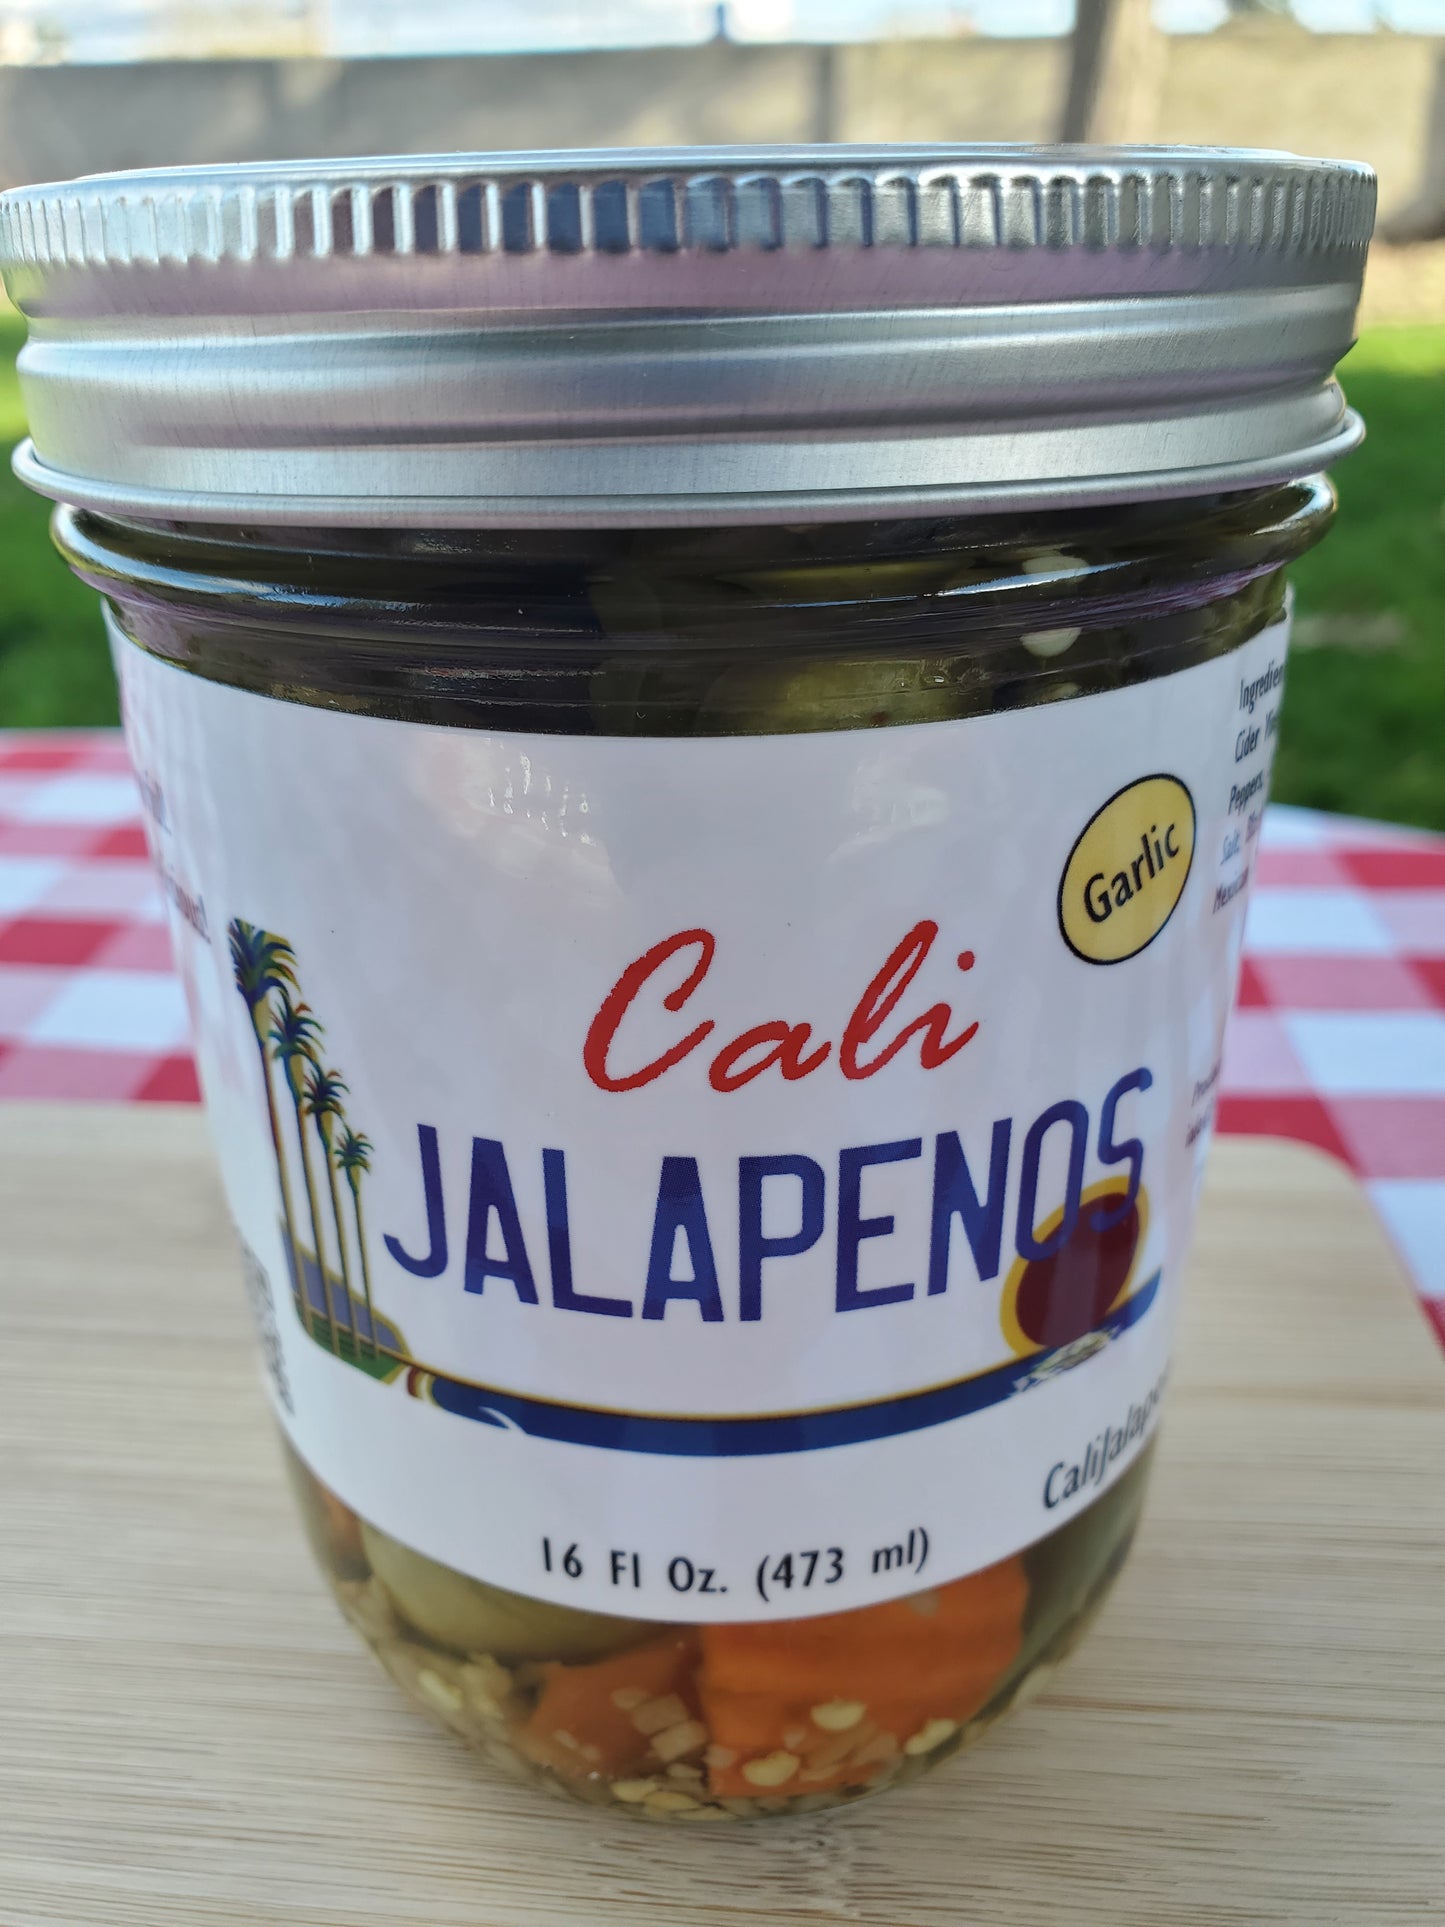 Garlic Jalapenos